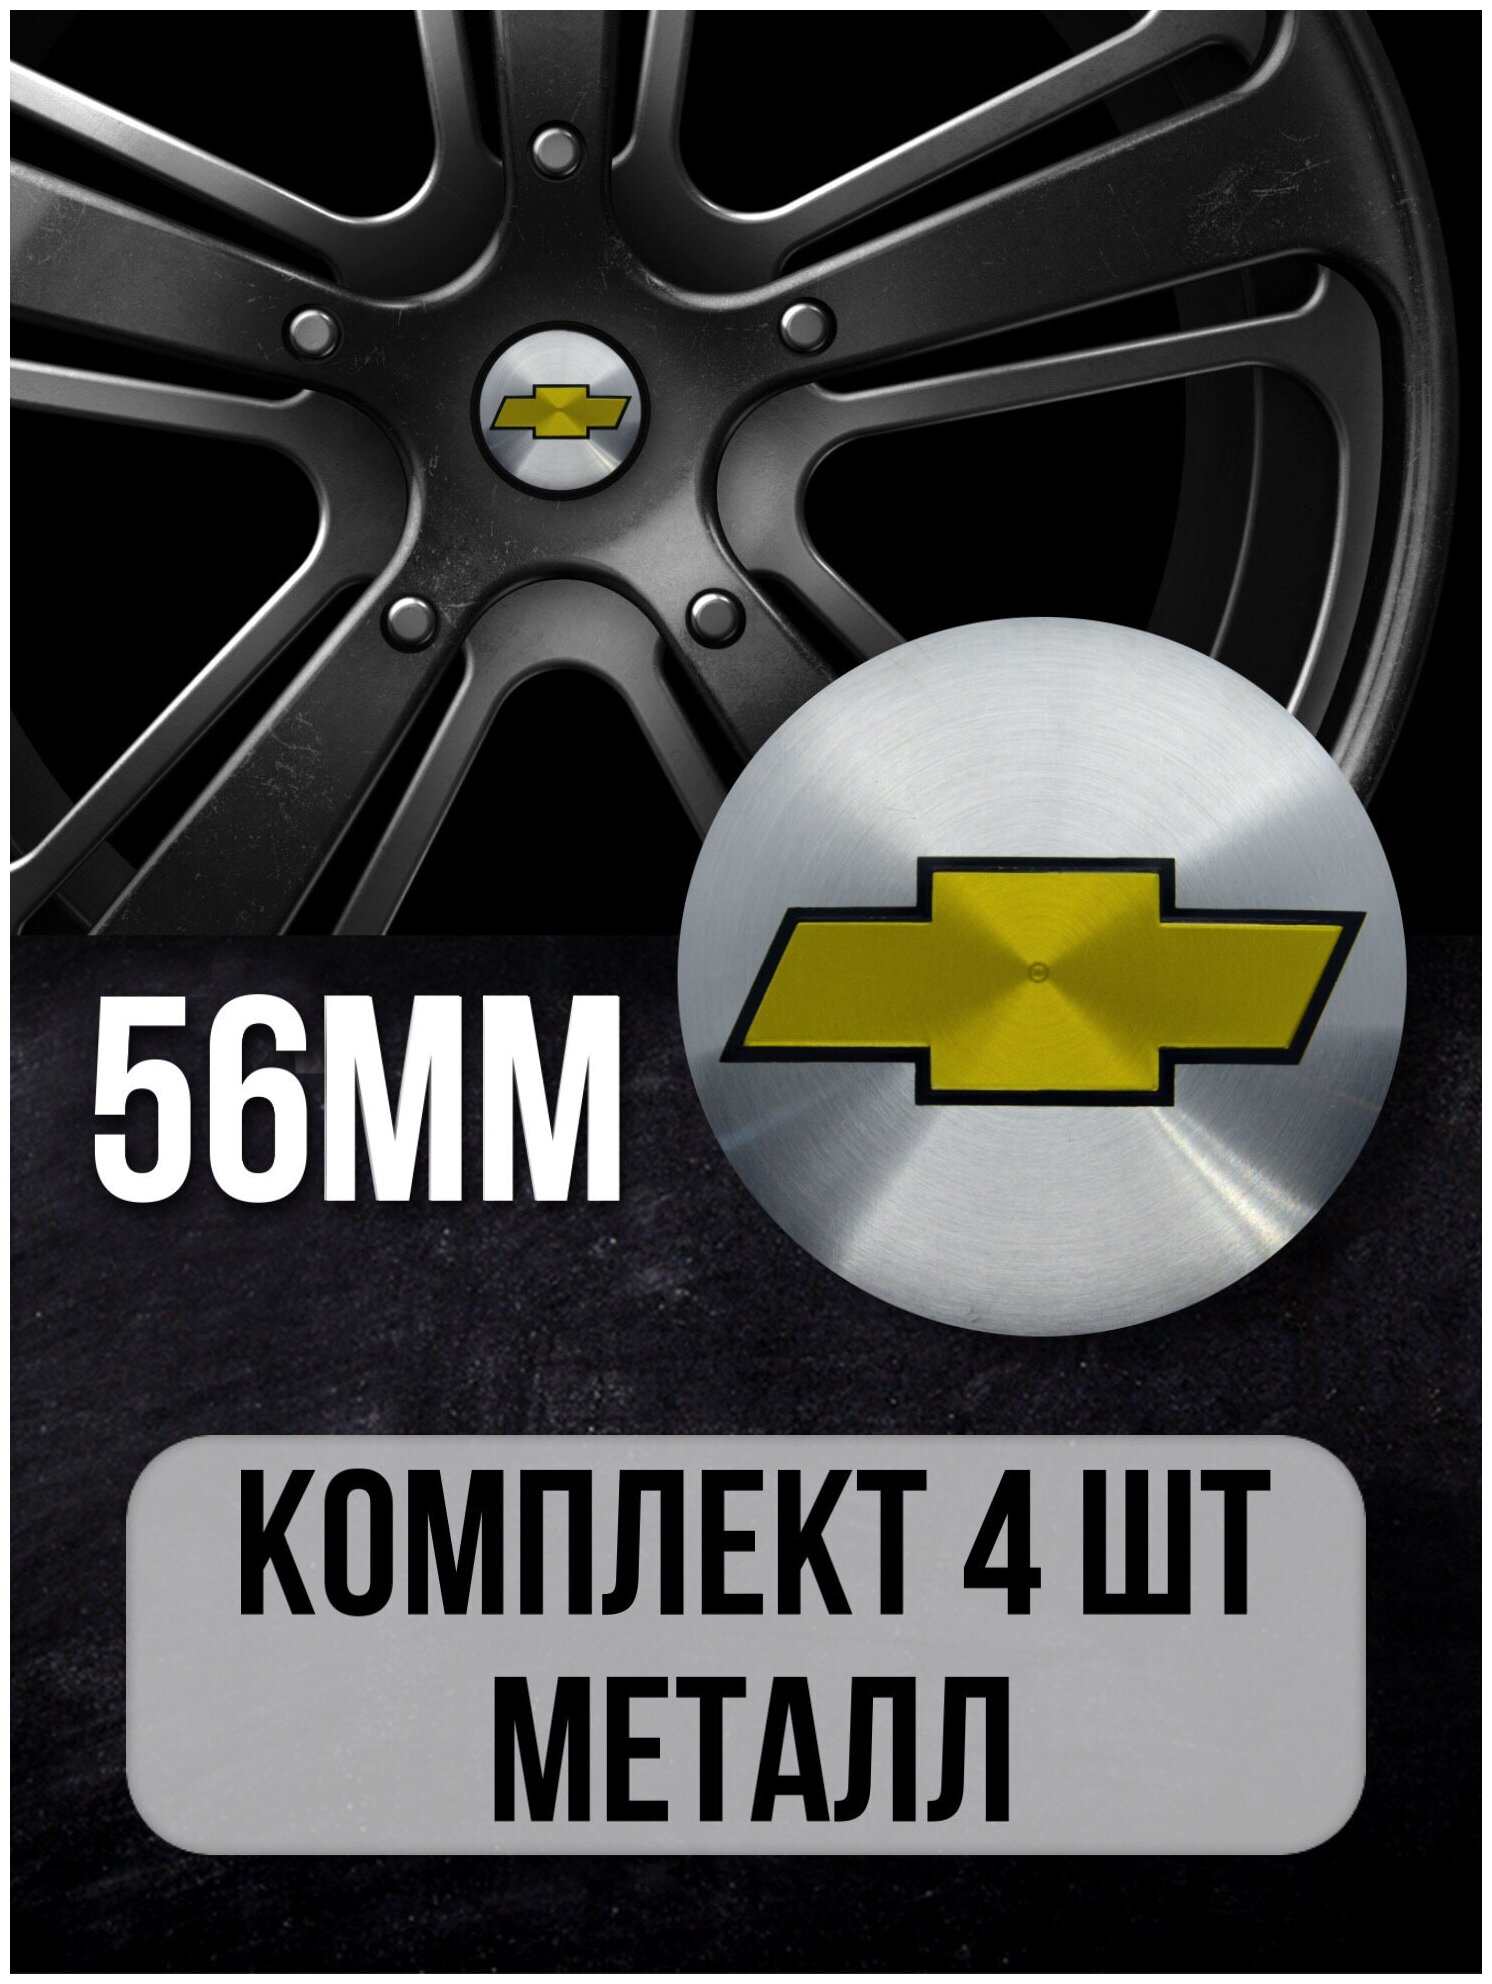 Наклейки на колесные диски алюминиевые 4шт наклейка на колесо автомобиля колпак для дисков стикиры с эмблемой Chevrolet D-60 mm